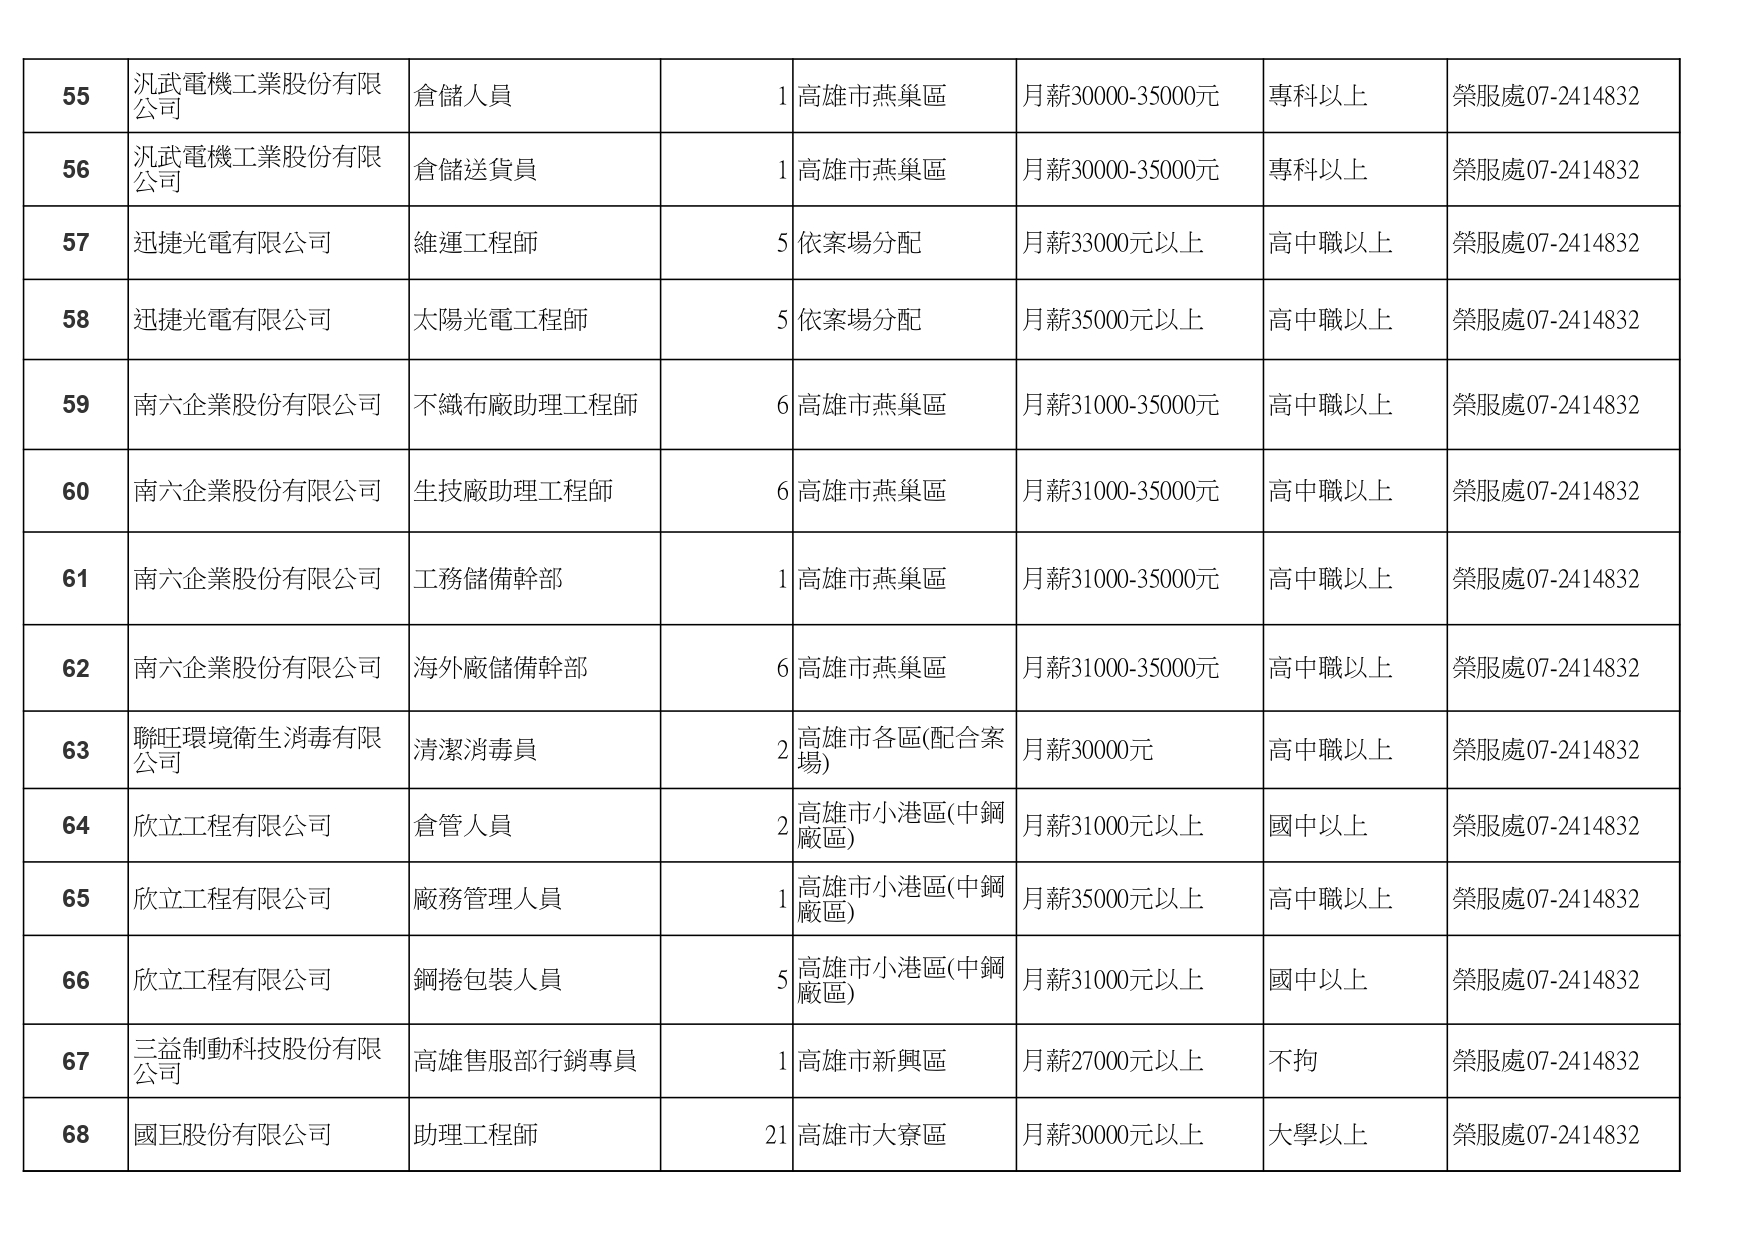 高雄榮服處-廠商職缺列表112.10.3_page-0005